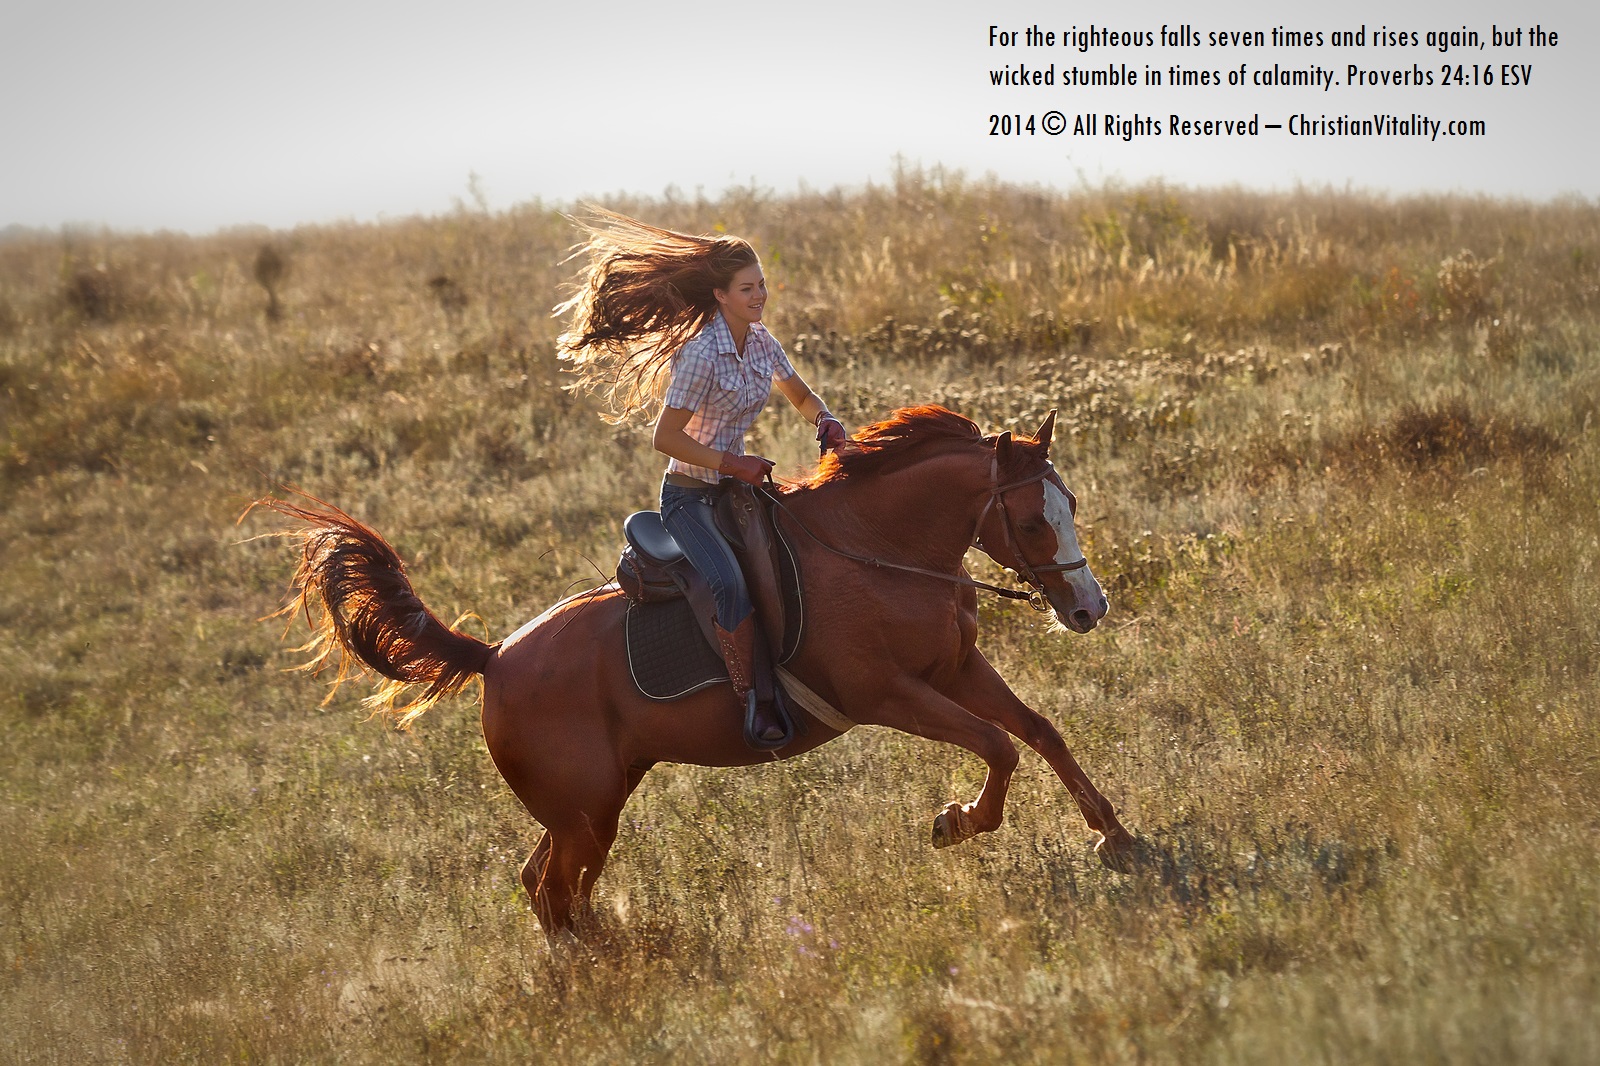 Мы вновь ехали на лошадях и любовались. Рыжая девушка на лошади. Верхом на коне в поле. Девушка едет на коне. Езда в полях на лошади.